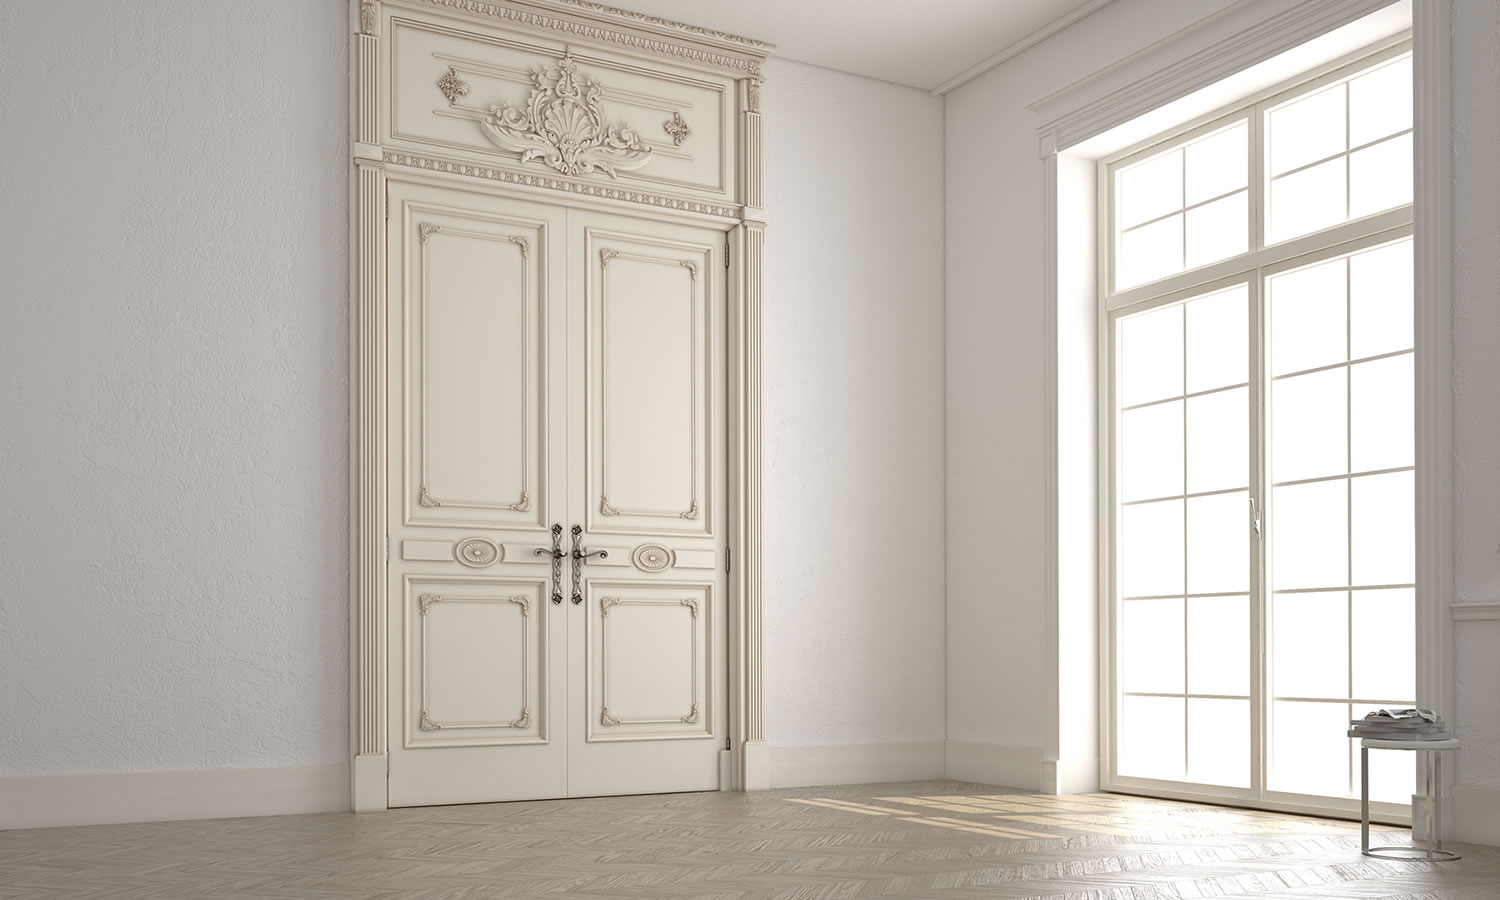 Blick auf eine Ecke in einem großen historischen Zimmer mit großer weißer, verzierter Holztür und einem großem Sprossenfenster